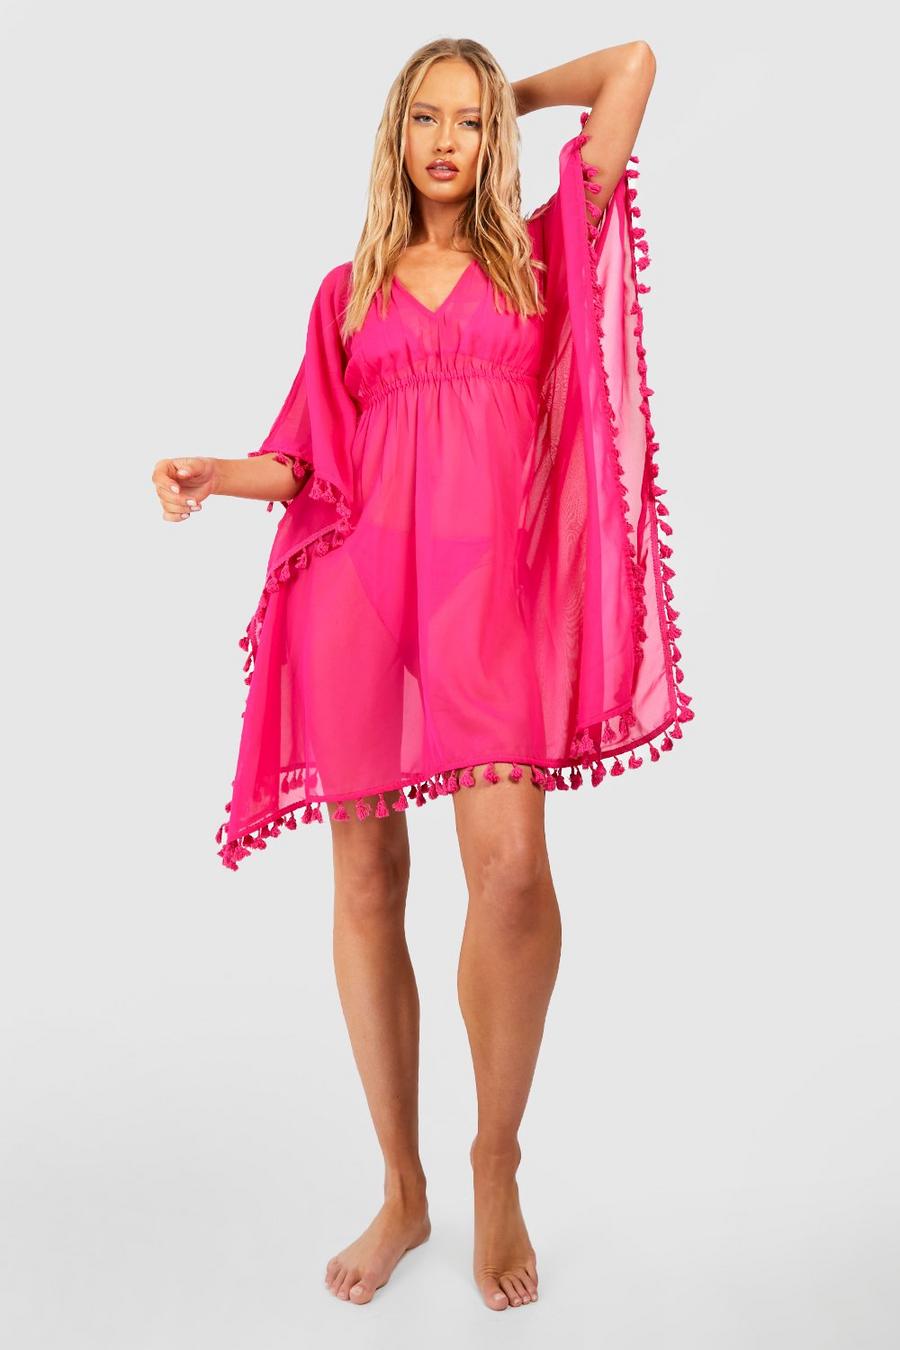 Hot pink Tall Tassel Trim Chiffon Mini Beach Dress